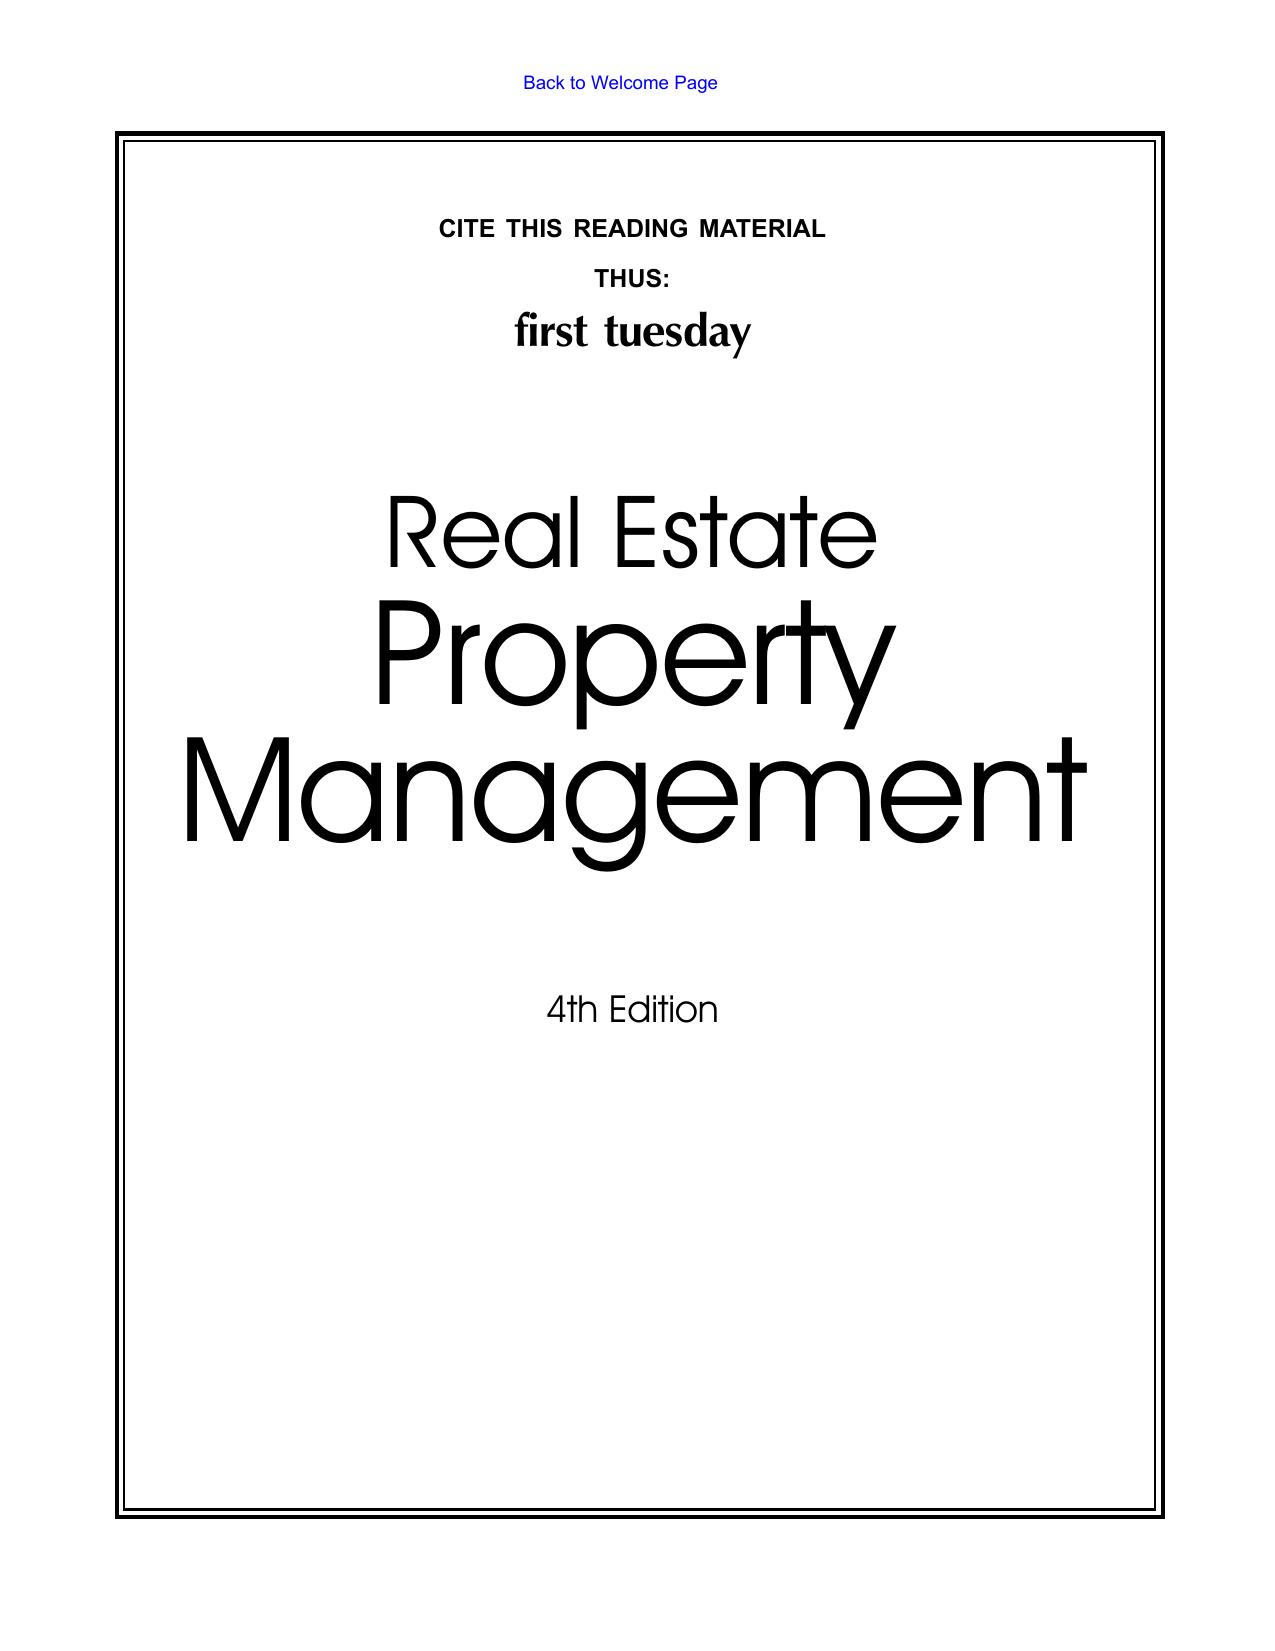 Real Estate Property Management 2007